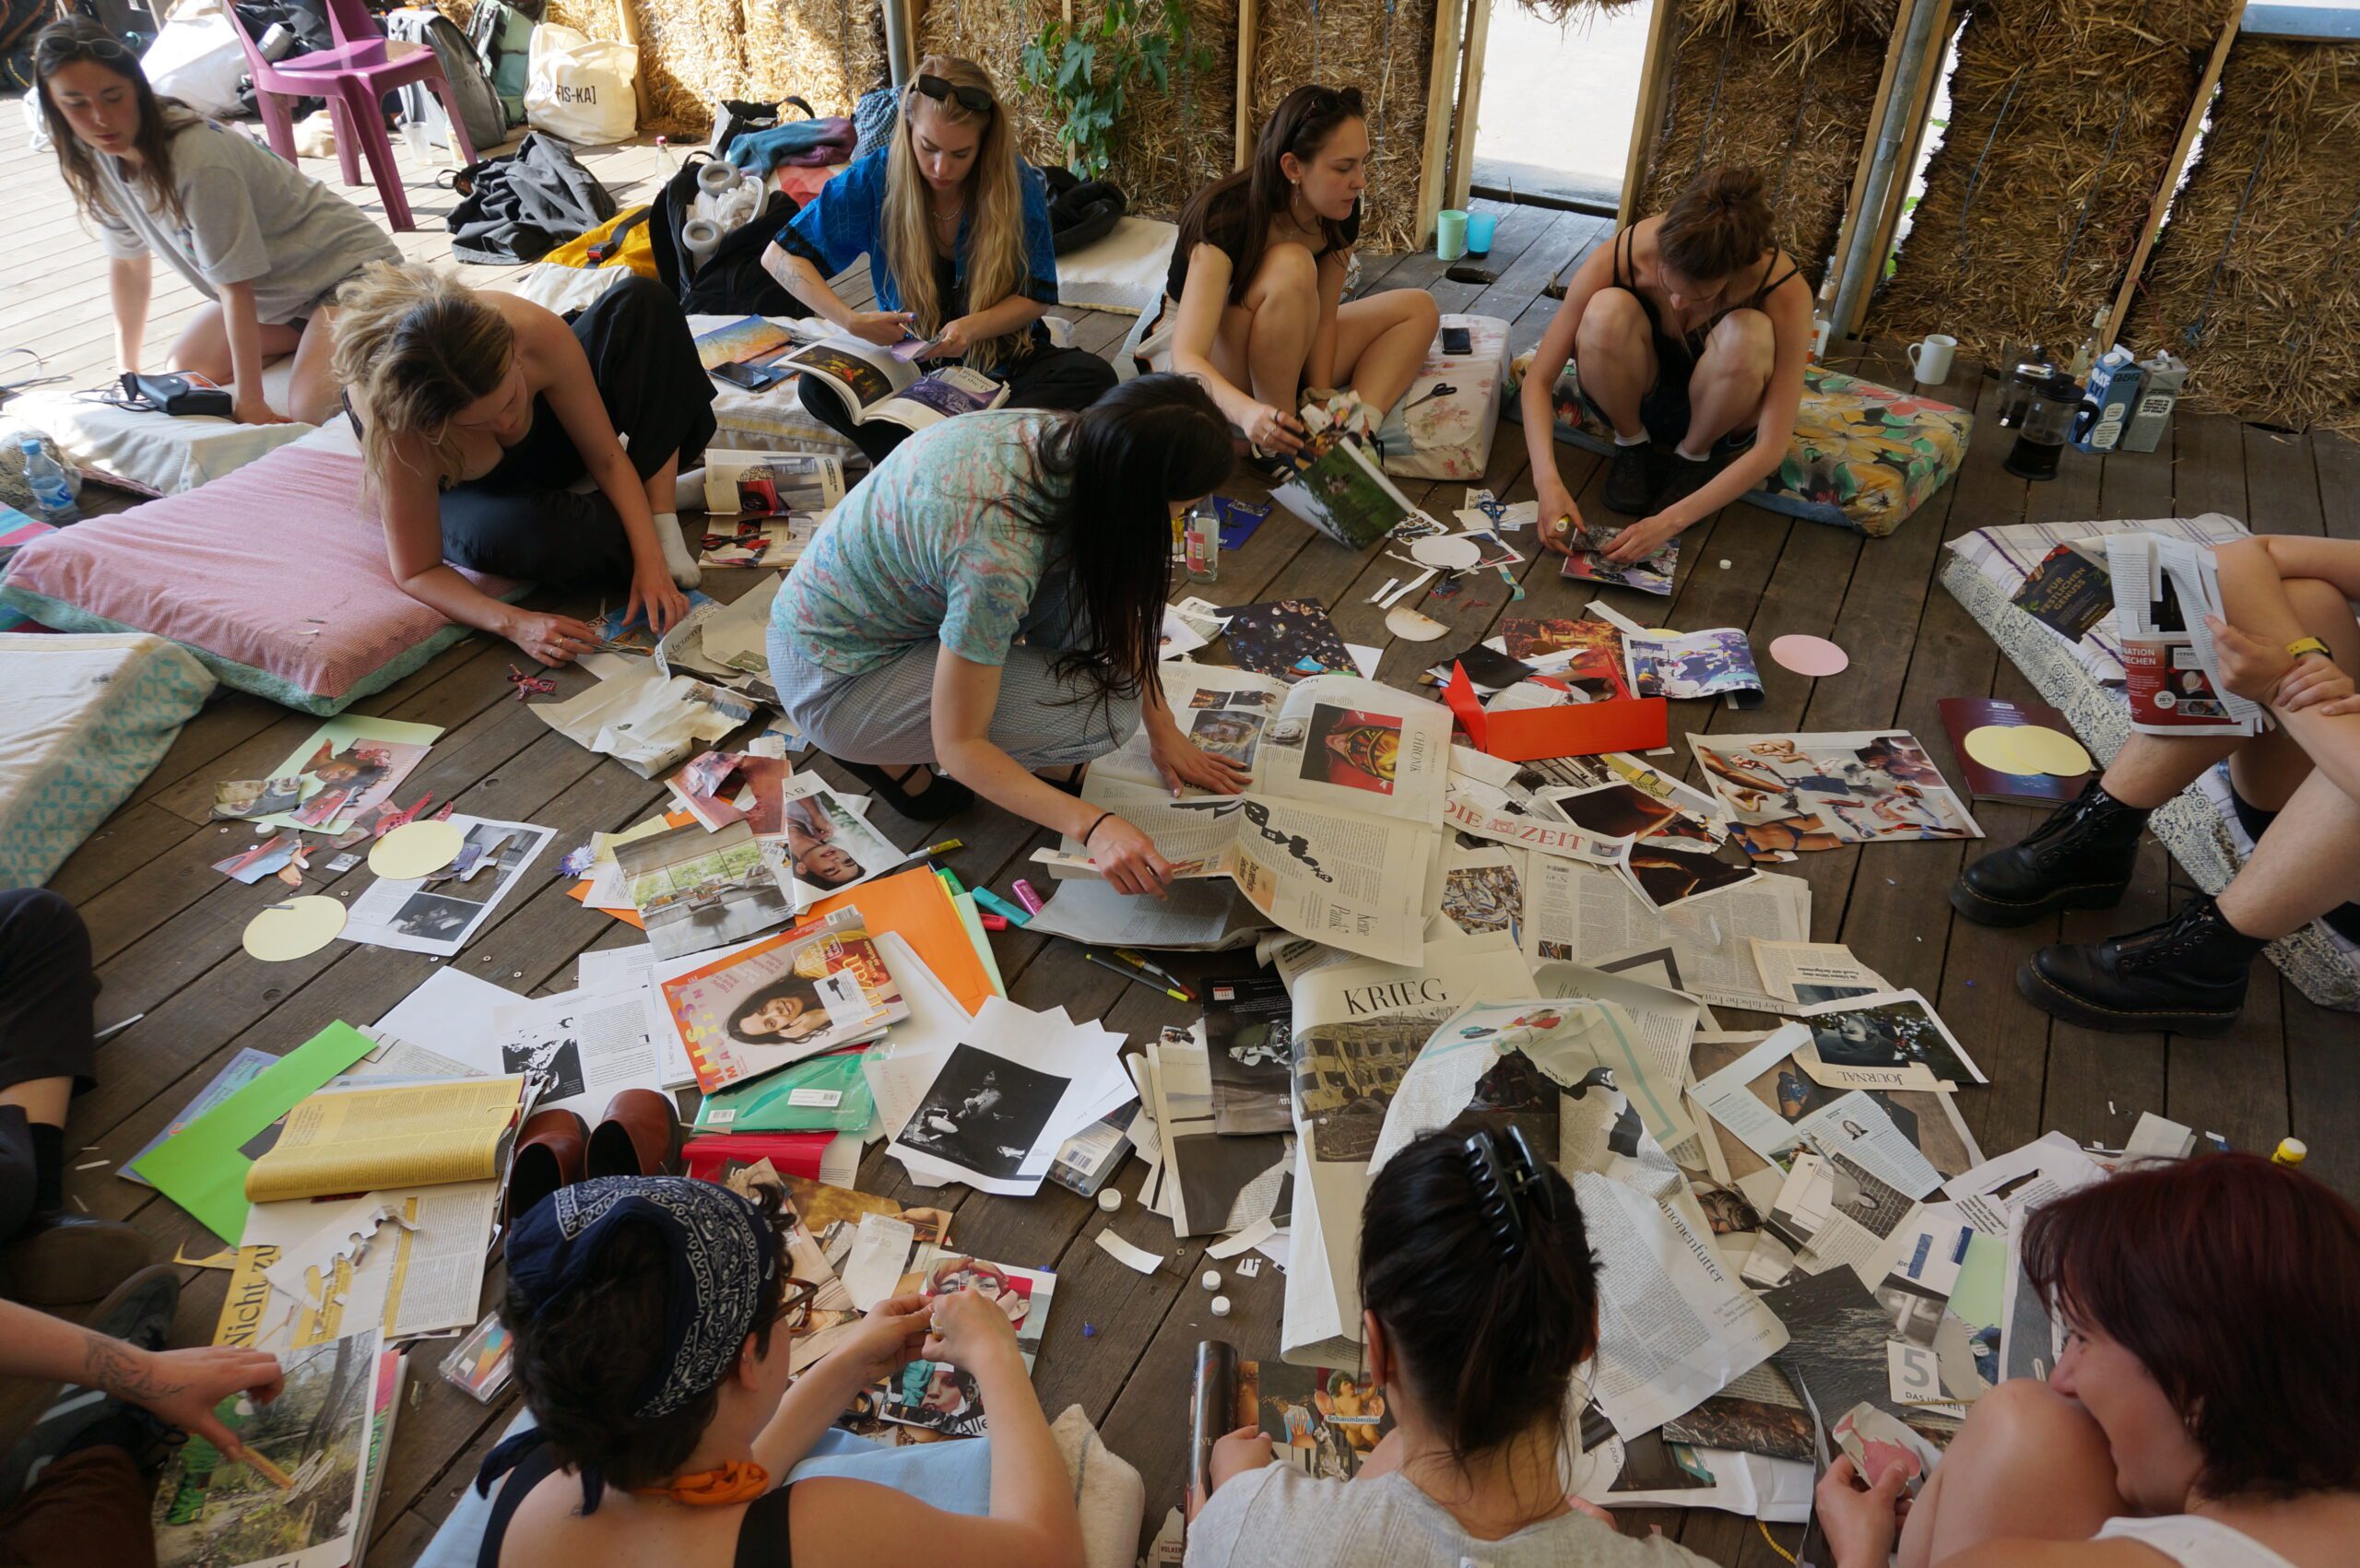 Das KHG-Team sitzt in einem Pavillion auf dem Boden und bastelt mit viel Papier eine Collage.